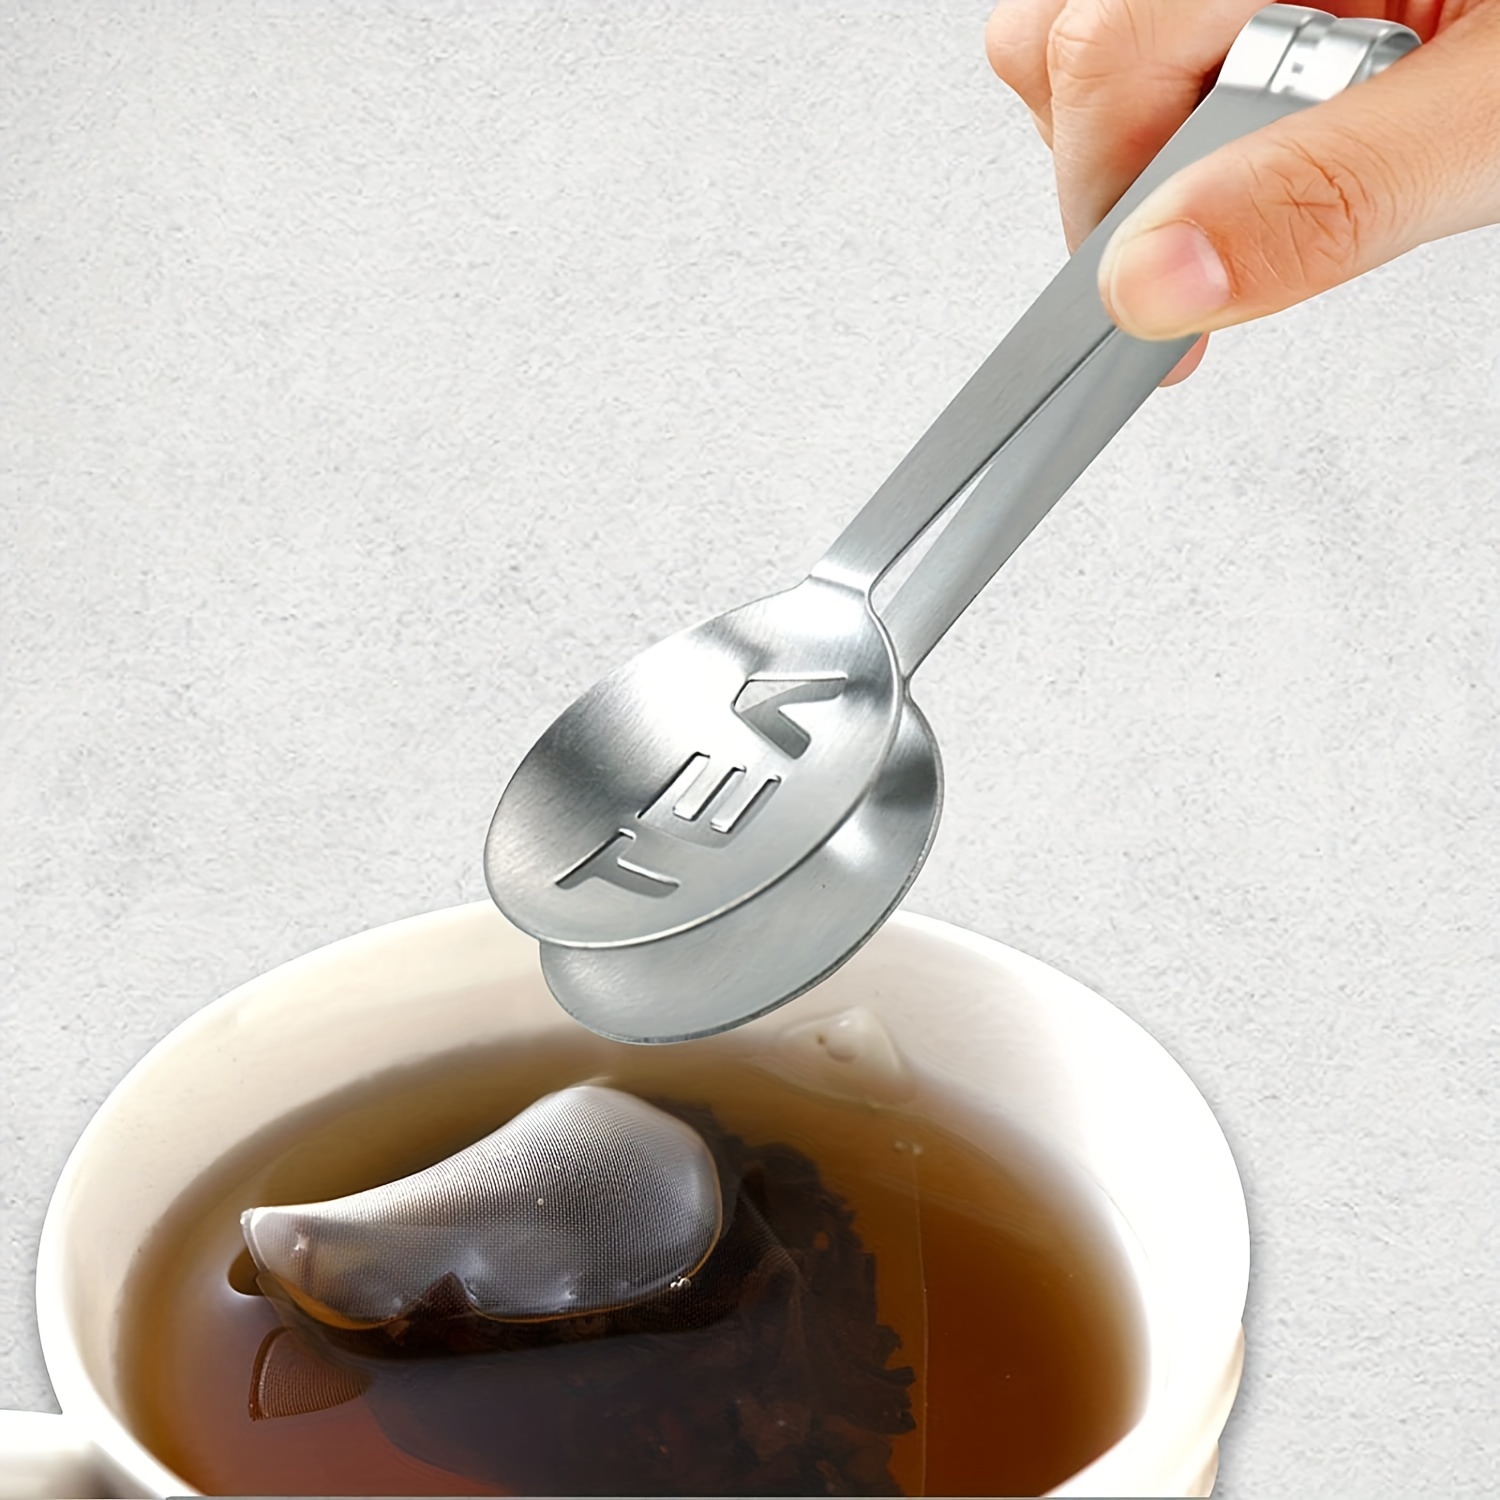 1pc porte-sachet de thé en acier inoxydable clip de sachet de thé créatif